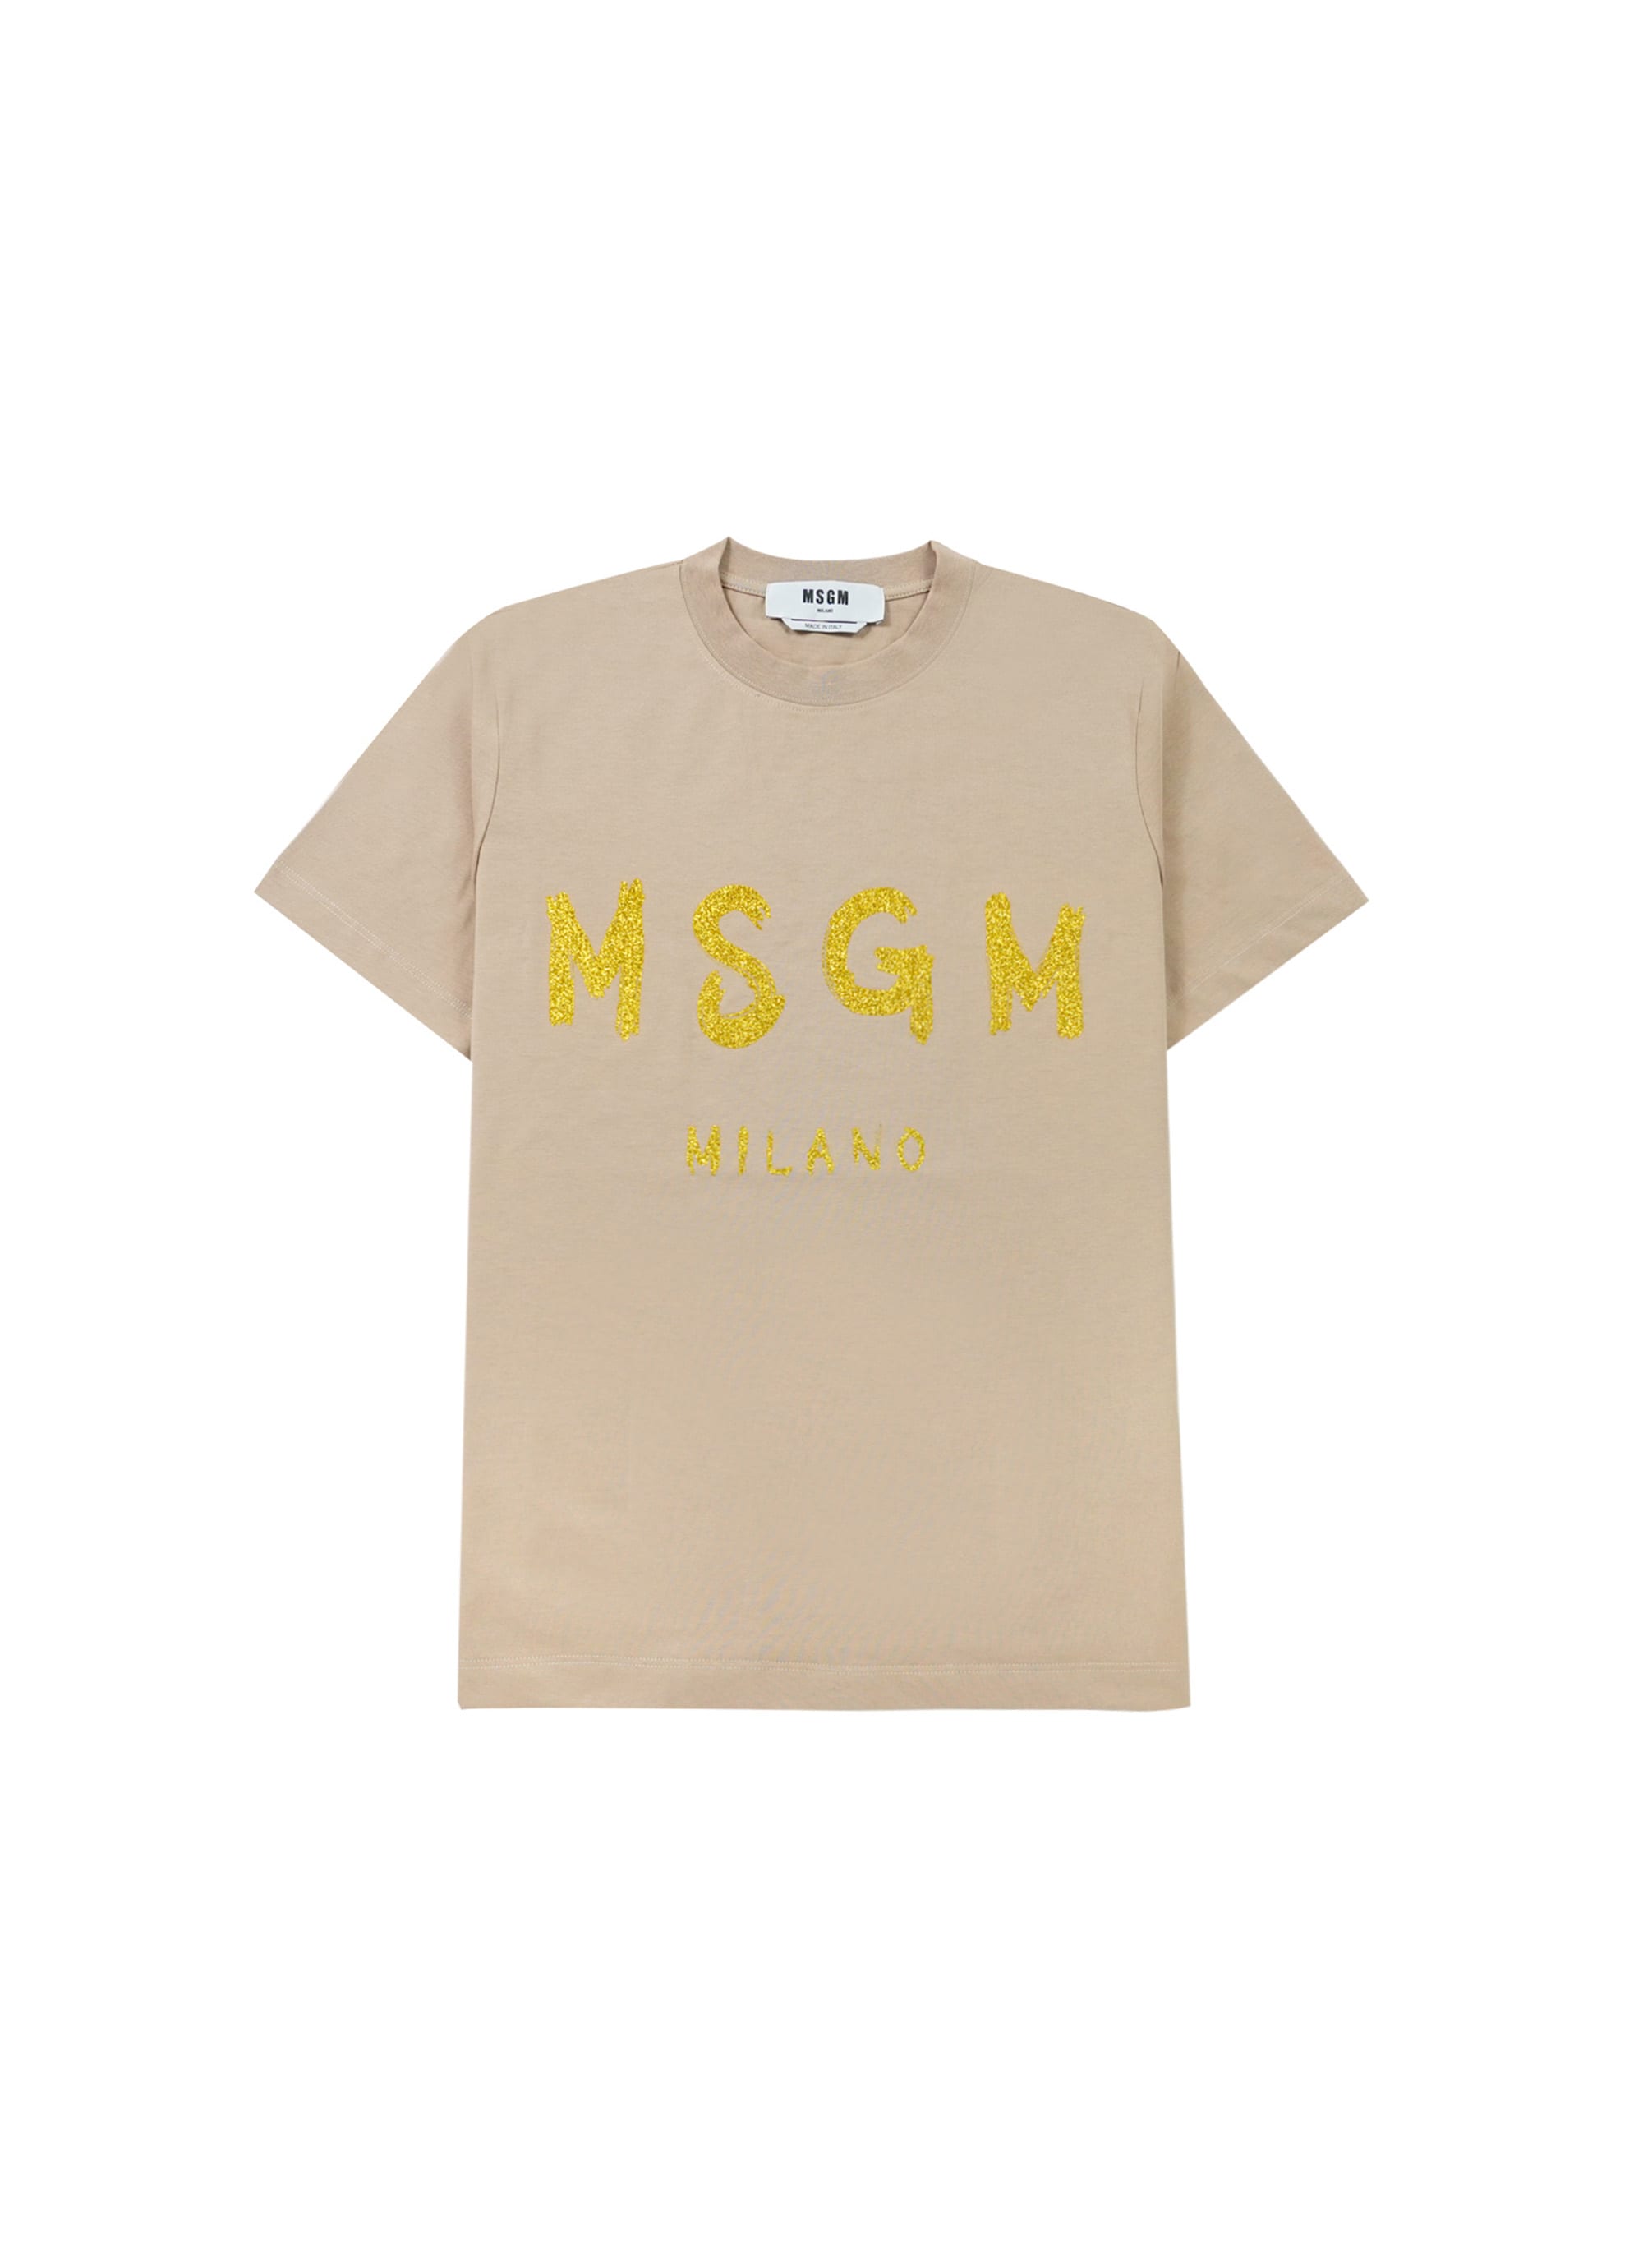 【NEW】MSGM ブラッシュロゴTシャツ【Japan Exclusive/GLITTER PRINT】 詳細画像 ベージュ×グリッターゴールド 1